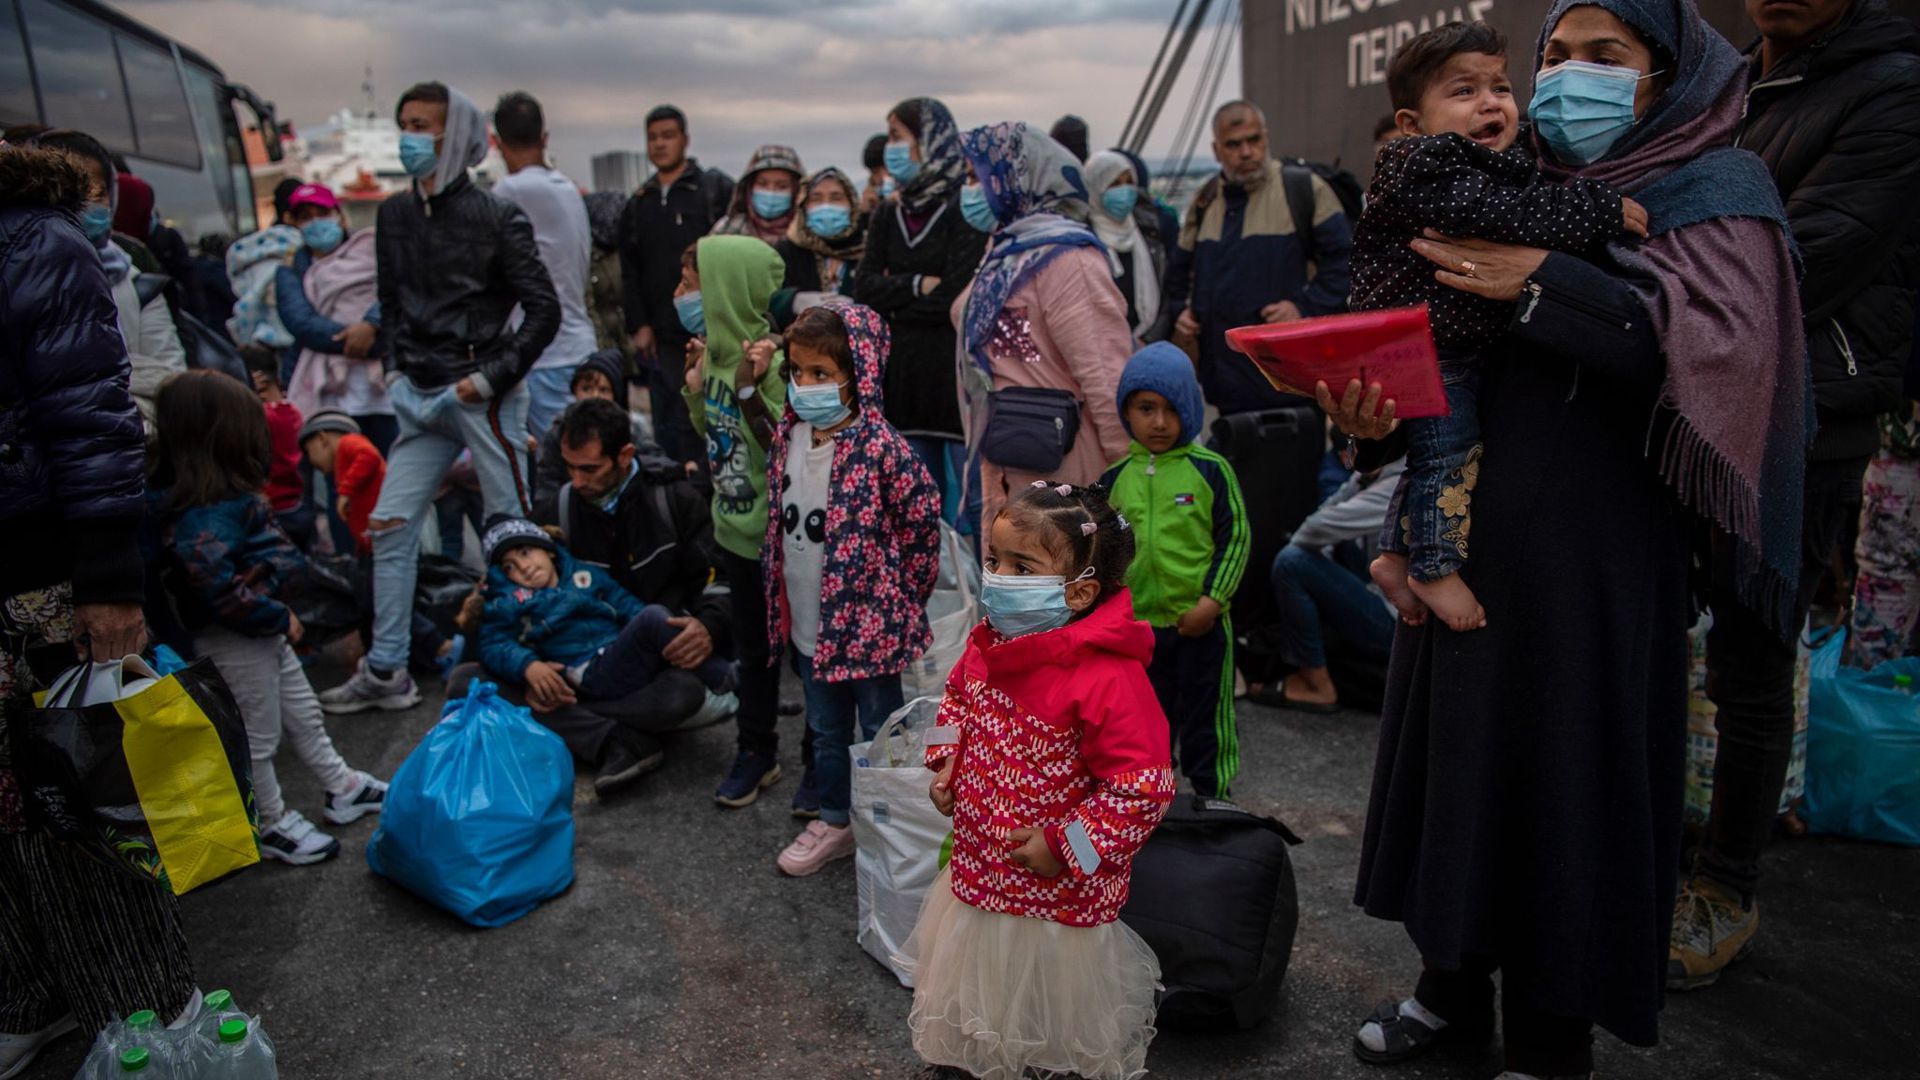 Flüchtlinge aus dem Lager Moria auf Lesbos gehen im Hafen von Piräus bei Athen an Land. Die Asylreform kommt seit Jahren kaum voran, weil die EU-Staaten vor allem bei der Verteilung von Schutzsuchenden völlig zerstritten sind.